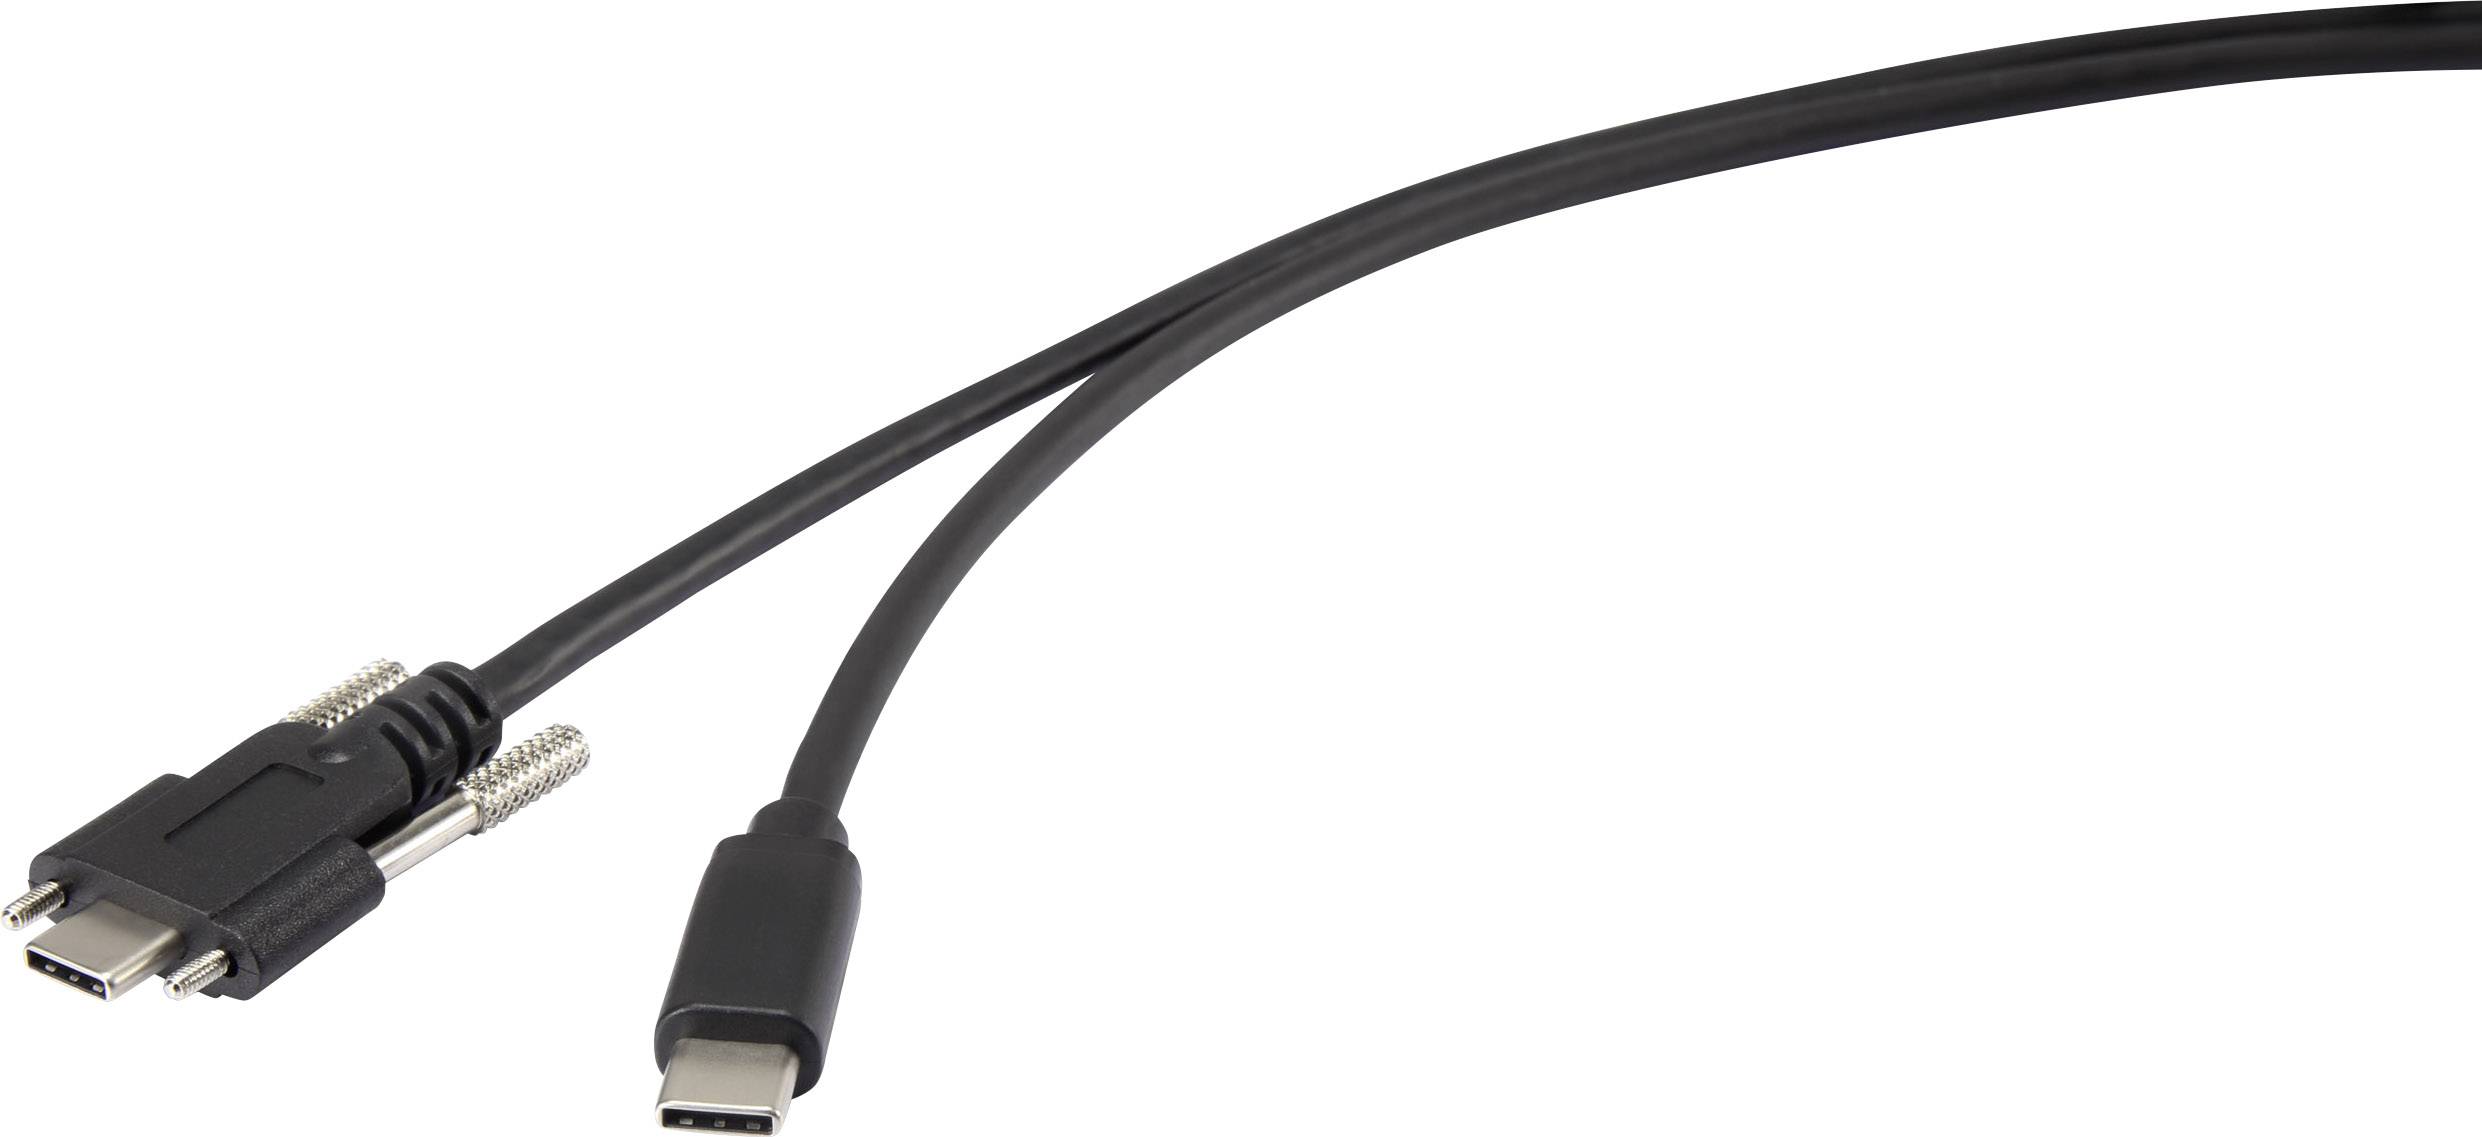 Verbindungskabel doppelt geflochtenes Nylon USB-2.0-Standard USB Typ C auf USB Typ C Silber Basics 0,9 m